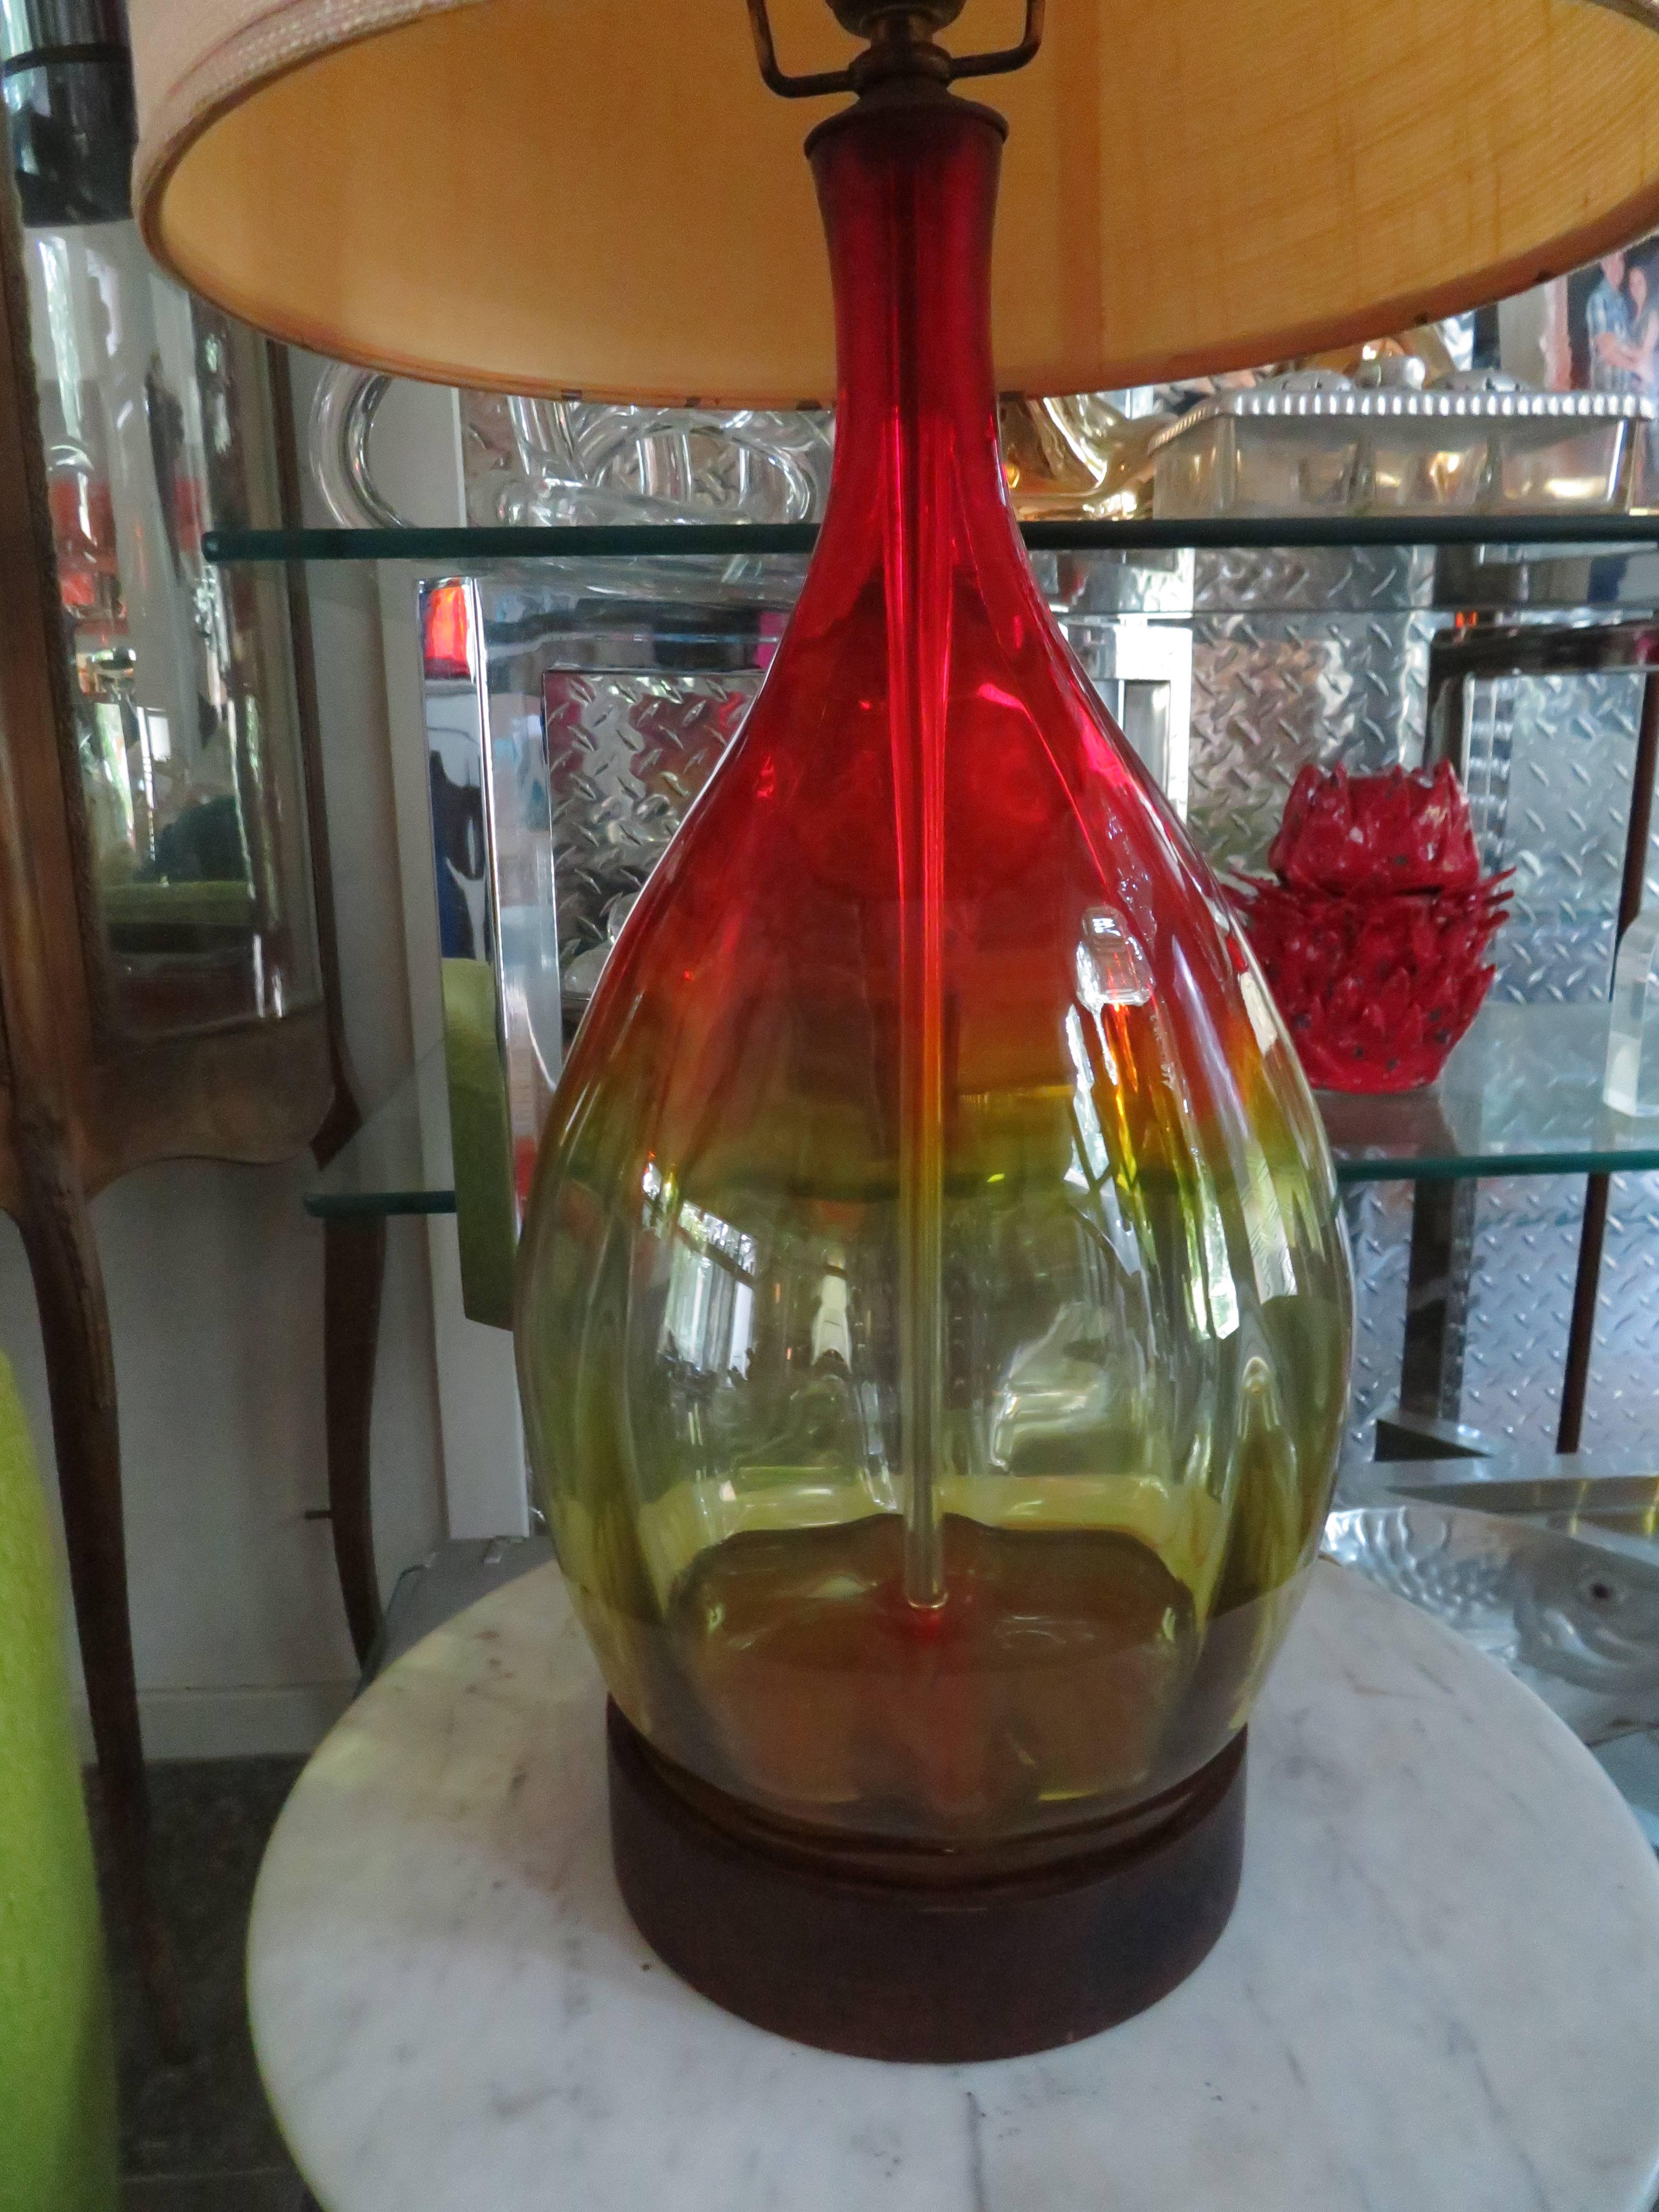 Superbe lampe Blenko rouge et orange, de style amberina, avec embout original. L'abat-jour original présente une légère usure mais le verre Blenko vintage est en parfait état. La lampe conserve son câblage d'origine en état de marche.